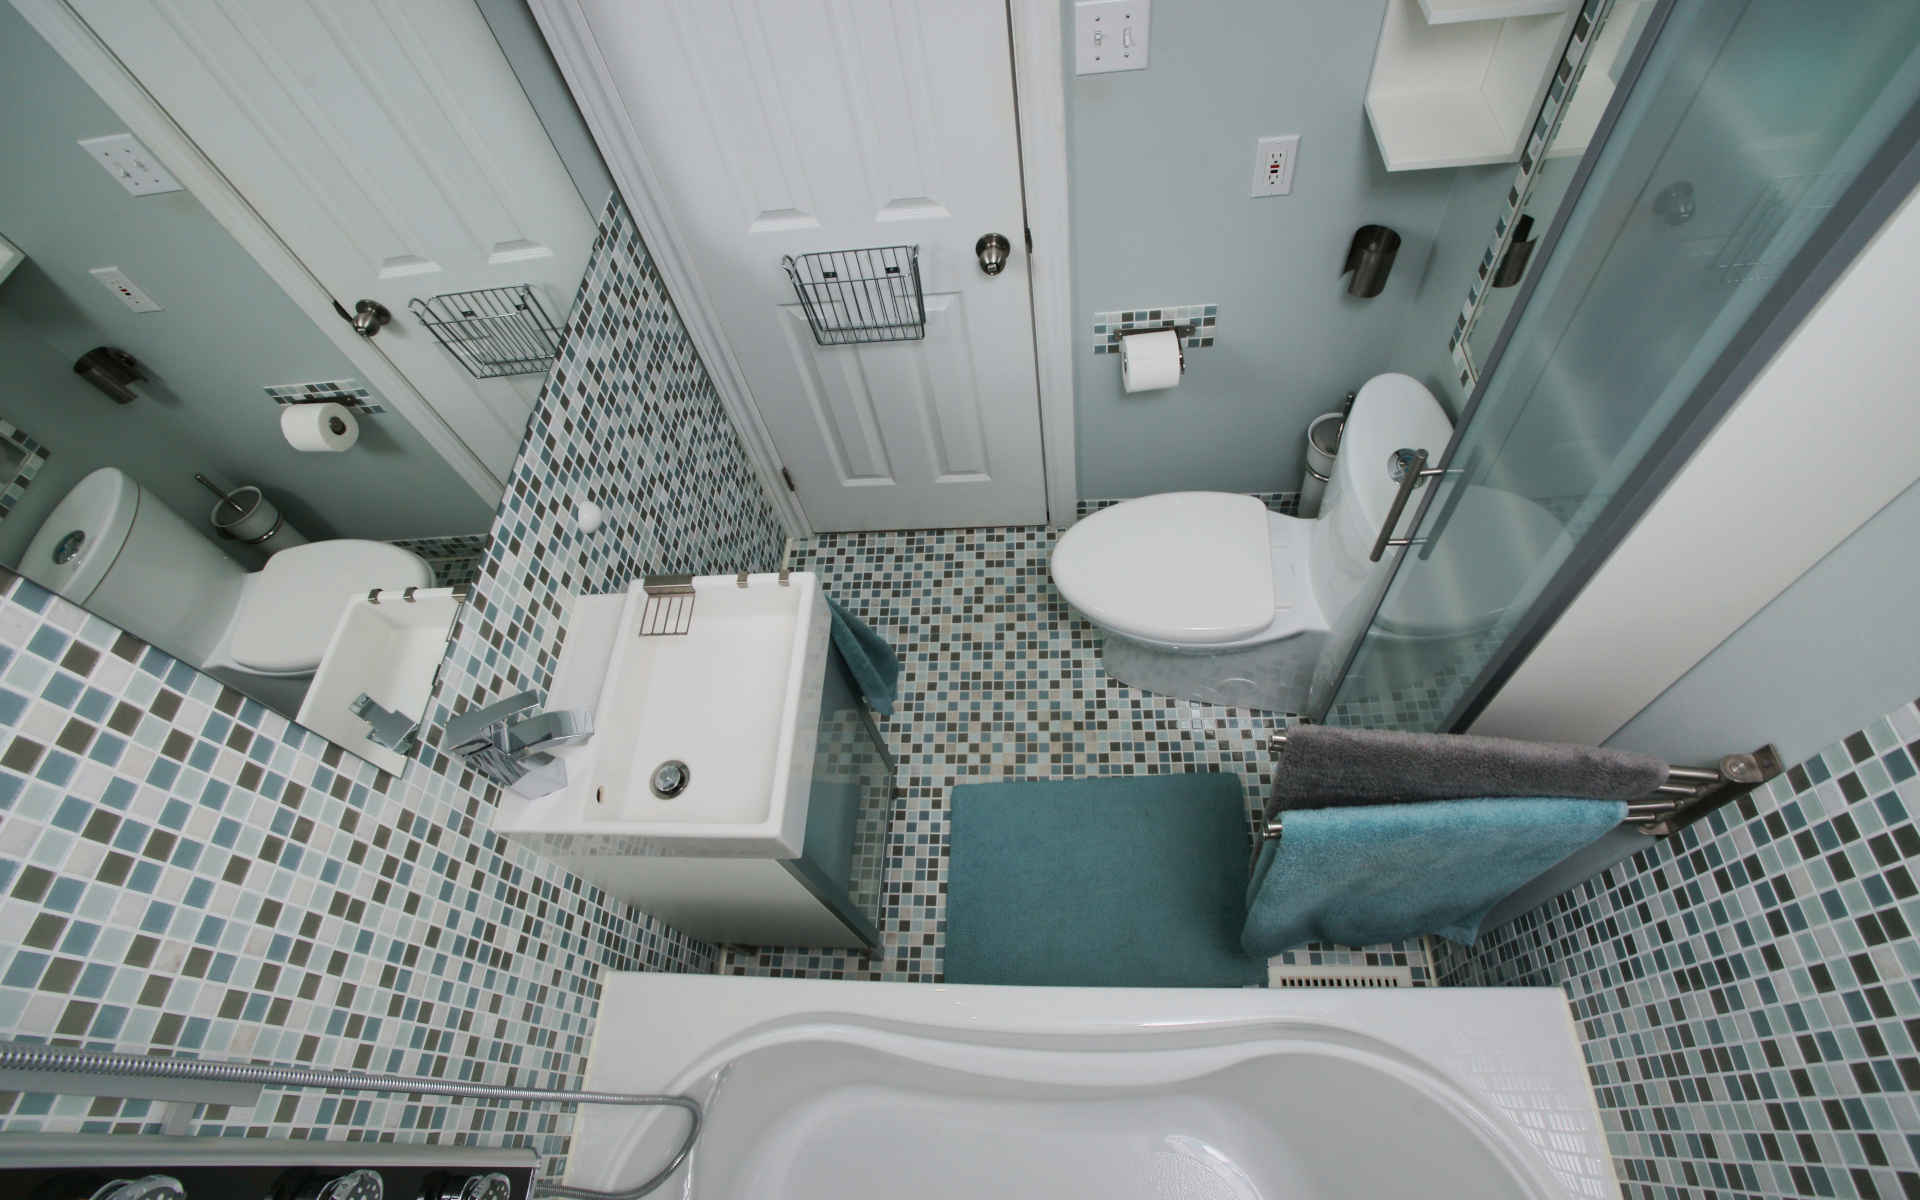 Дизайн маленькой ванной комнаты площадью 3 кв.м. (60 фото)